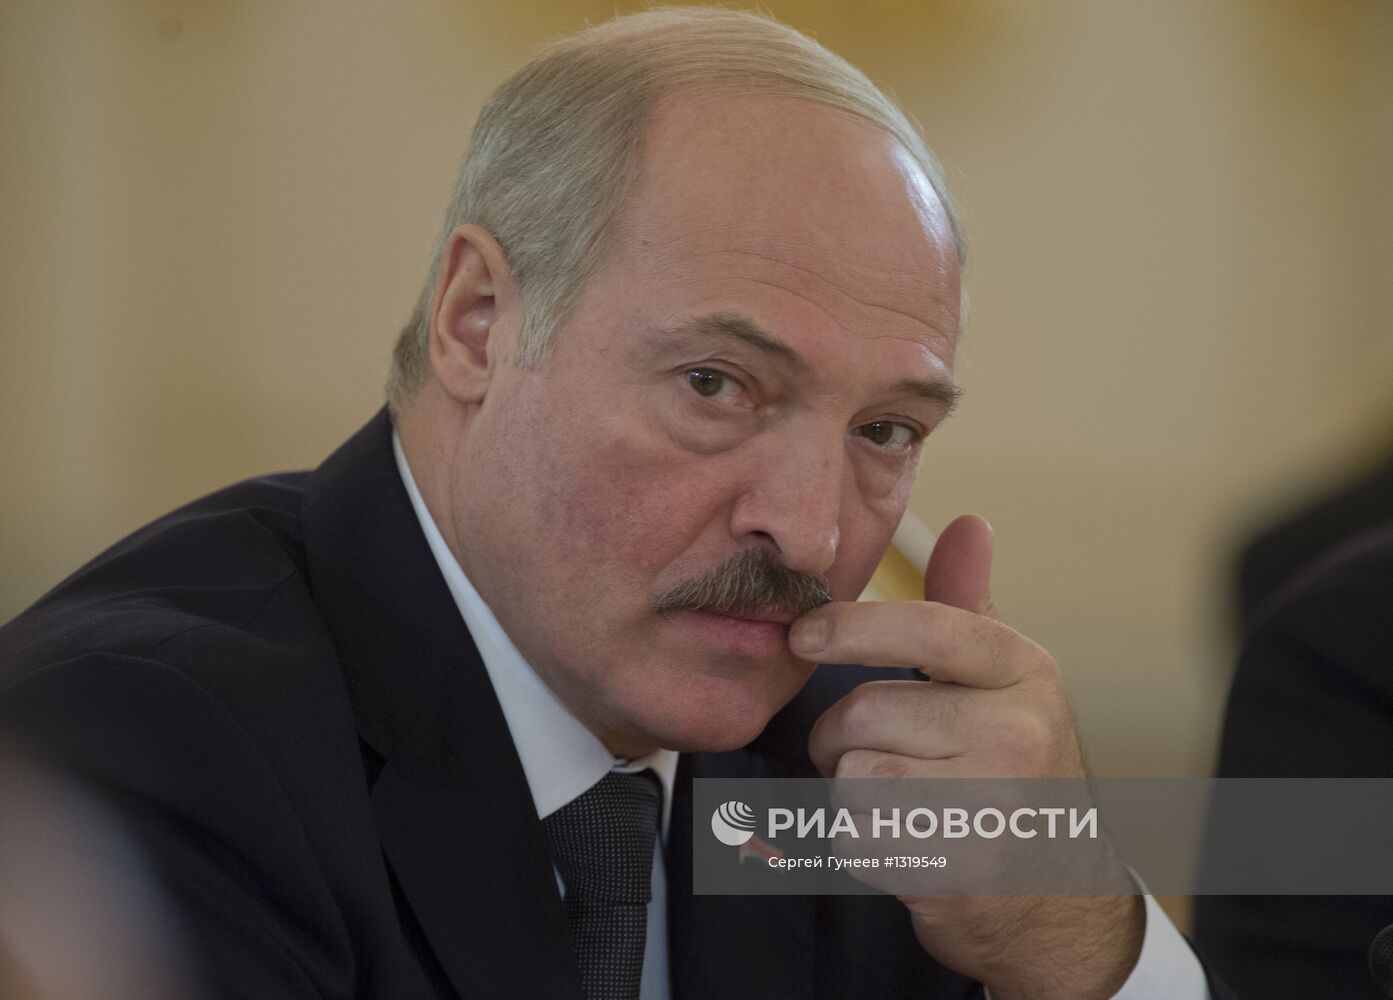 А.Лукашенкона сессии Совета ОДКБ в Кремле